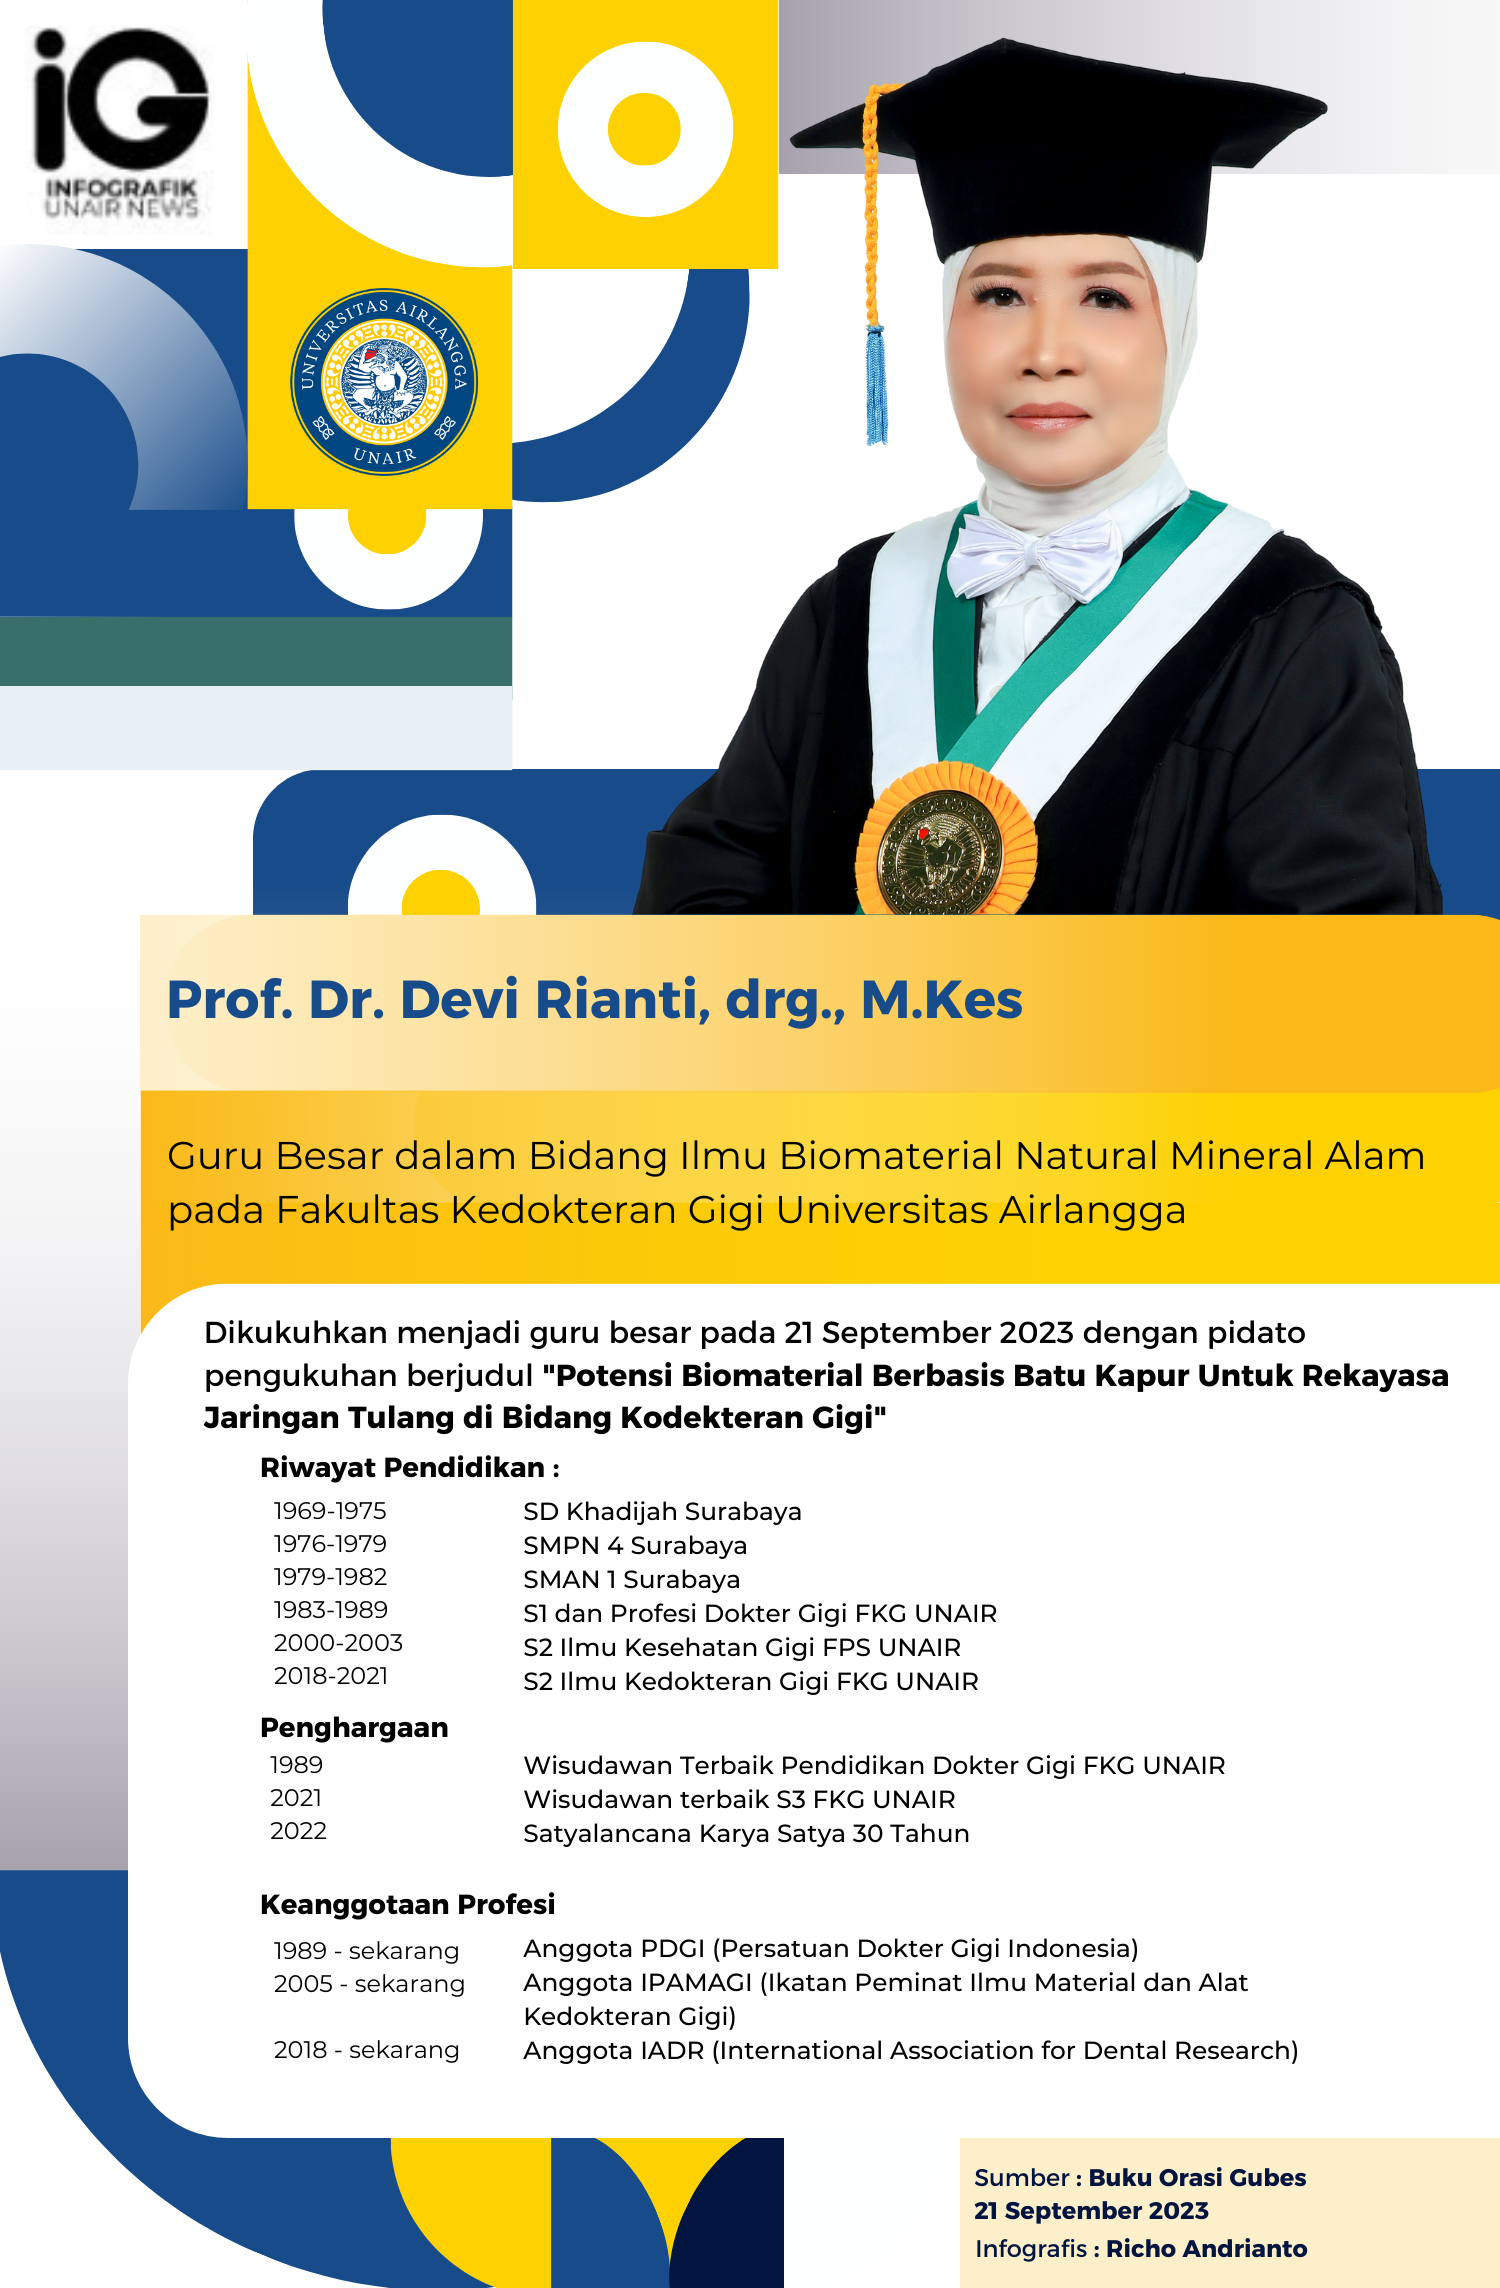 Infografik: Profil Guru Besar Prof. Dr. Devi Rianti, drg., M.Kes